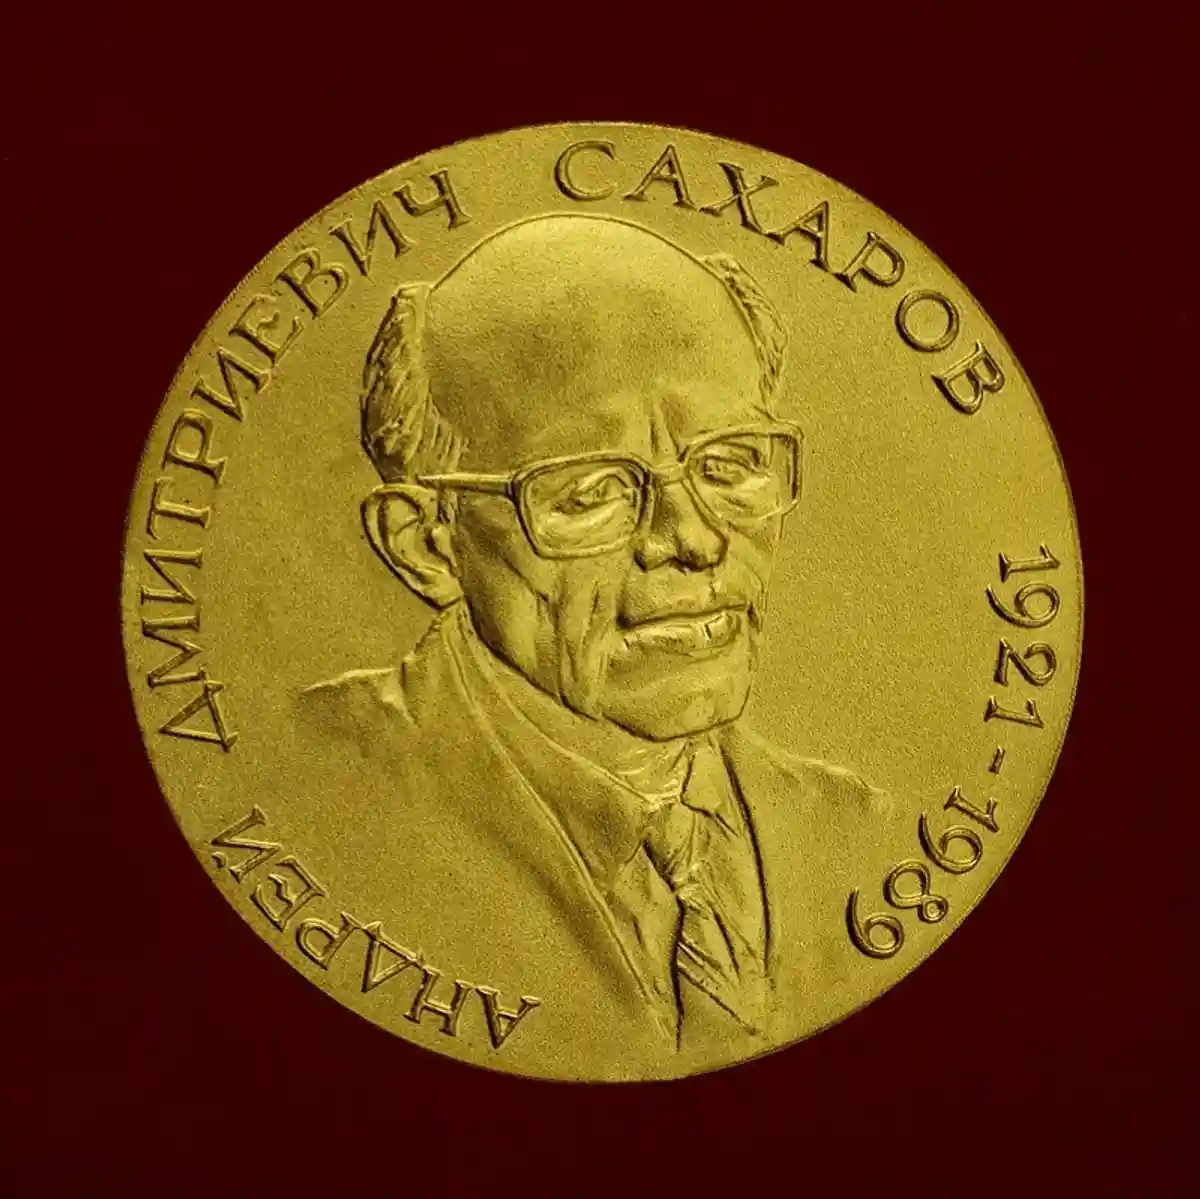 Золотая медаль имени А. Д. Сахарова Российской академии наук. Фото: Re2000 / Wikipedia.org